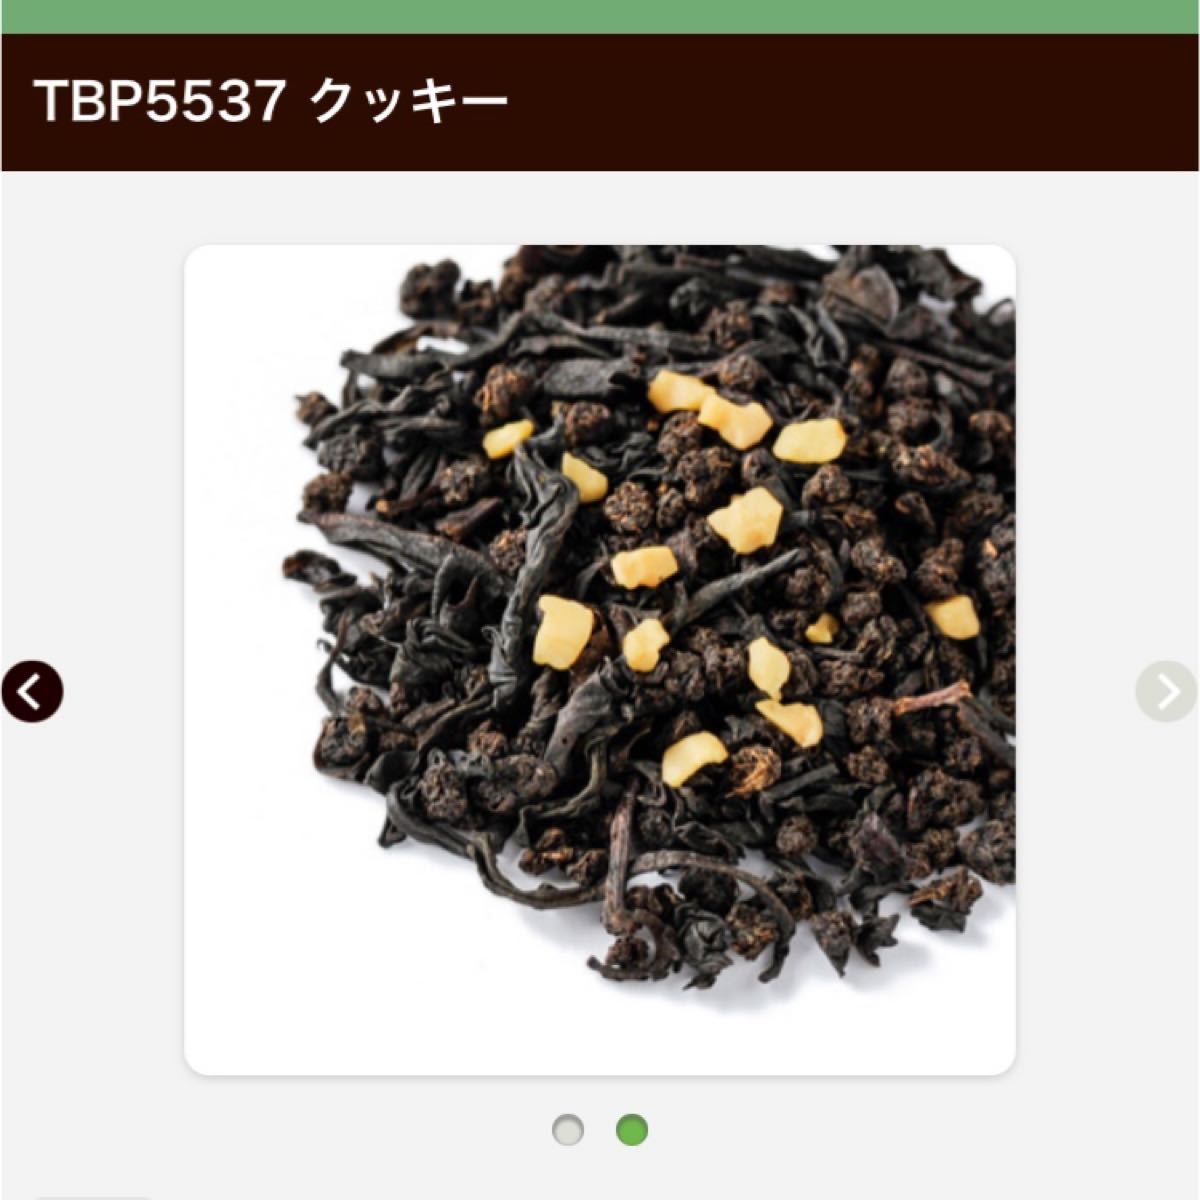 【即決OK 新品未開封】ルピシア ティーバッグ 高級茶葉セット ミルクティー向き フレーバーティー